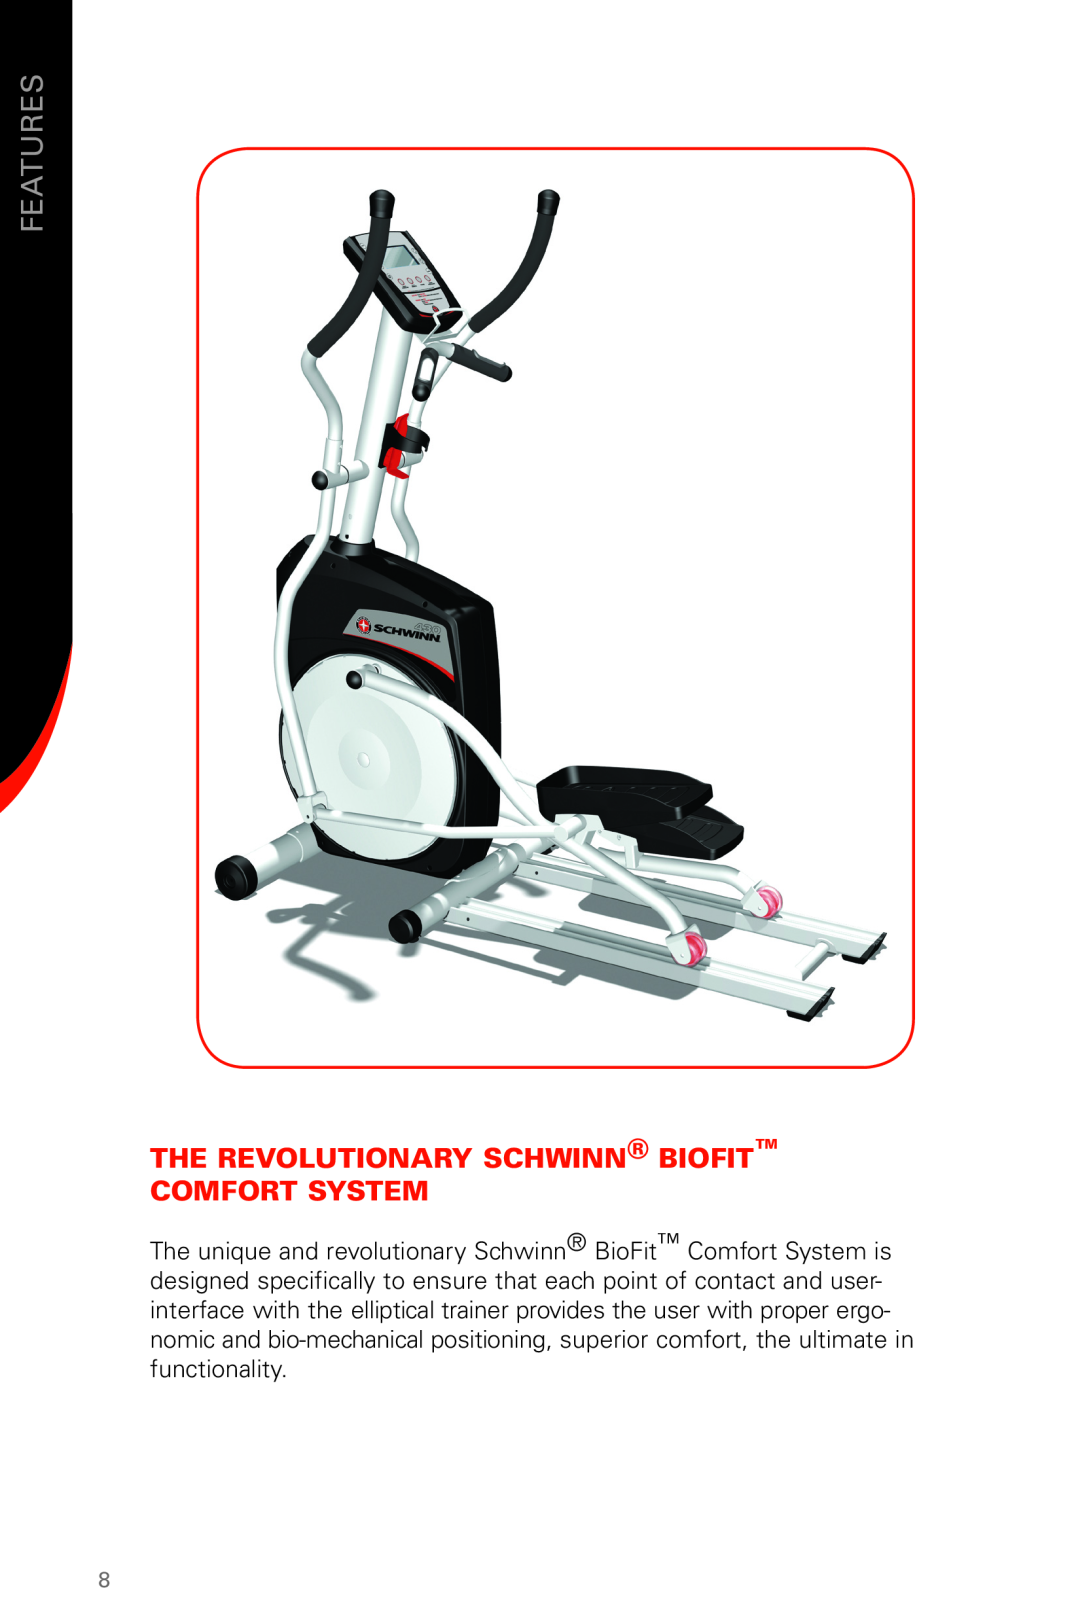 Schwinn 430 manual Features, The Revolutionary Schwinn Biofit Comfort System 